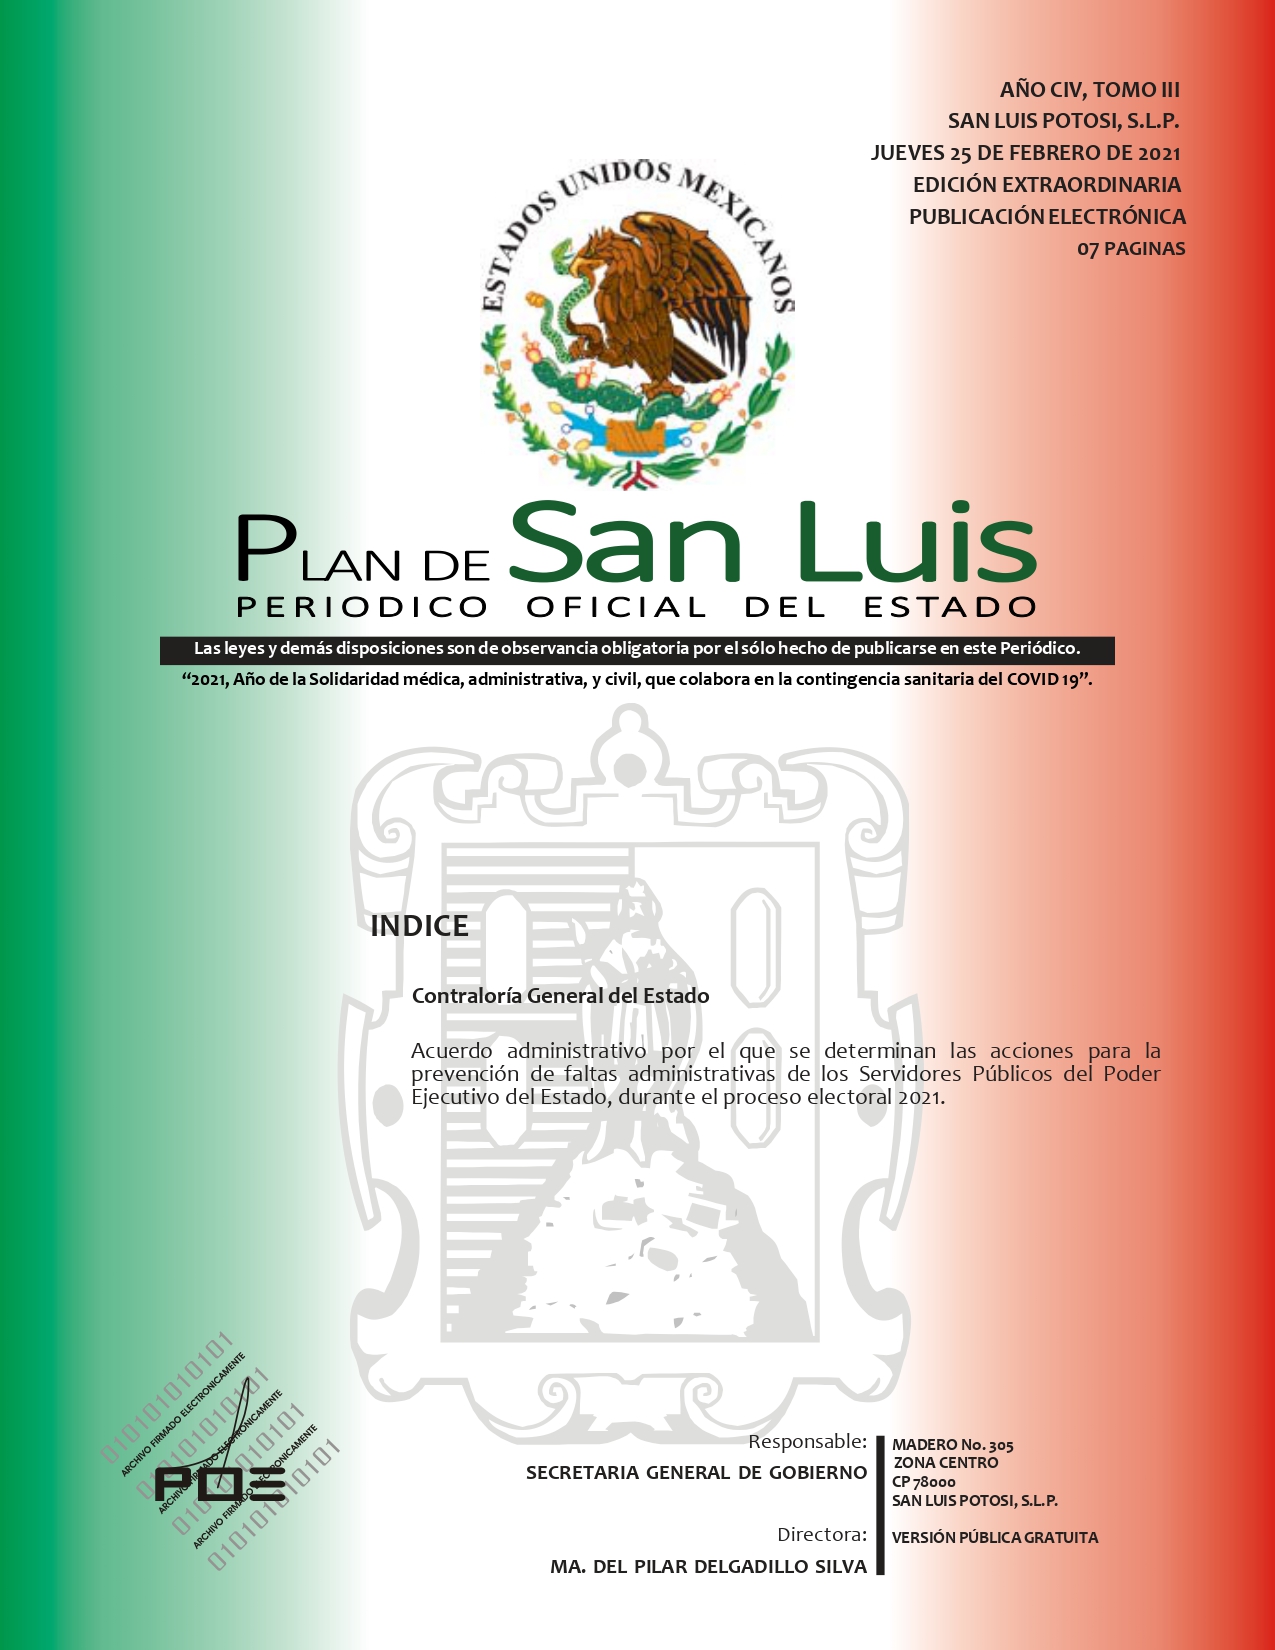 SLP ACUERDO PARA LA PREVENCION DE FALTAS DE LOS SERVIDORES PUBLICOS (25-FEB-2021) (1)_pages-to-jpg-0001.jpg